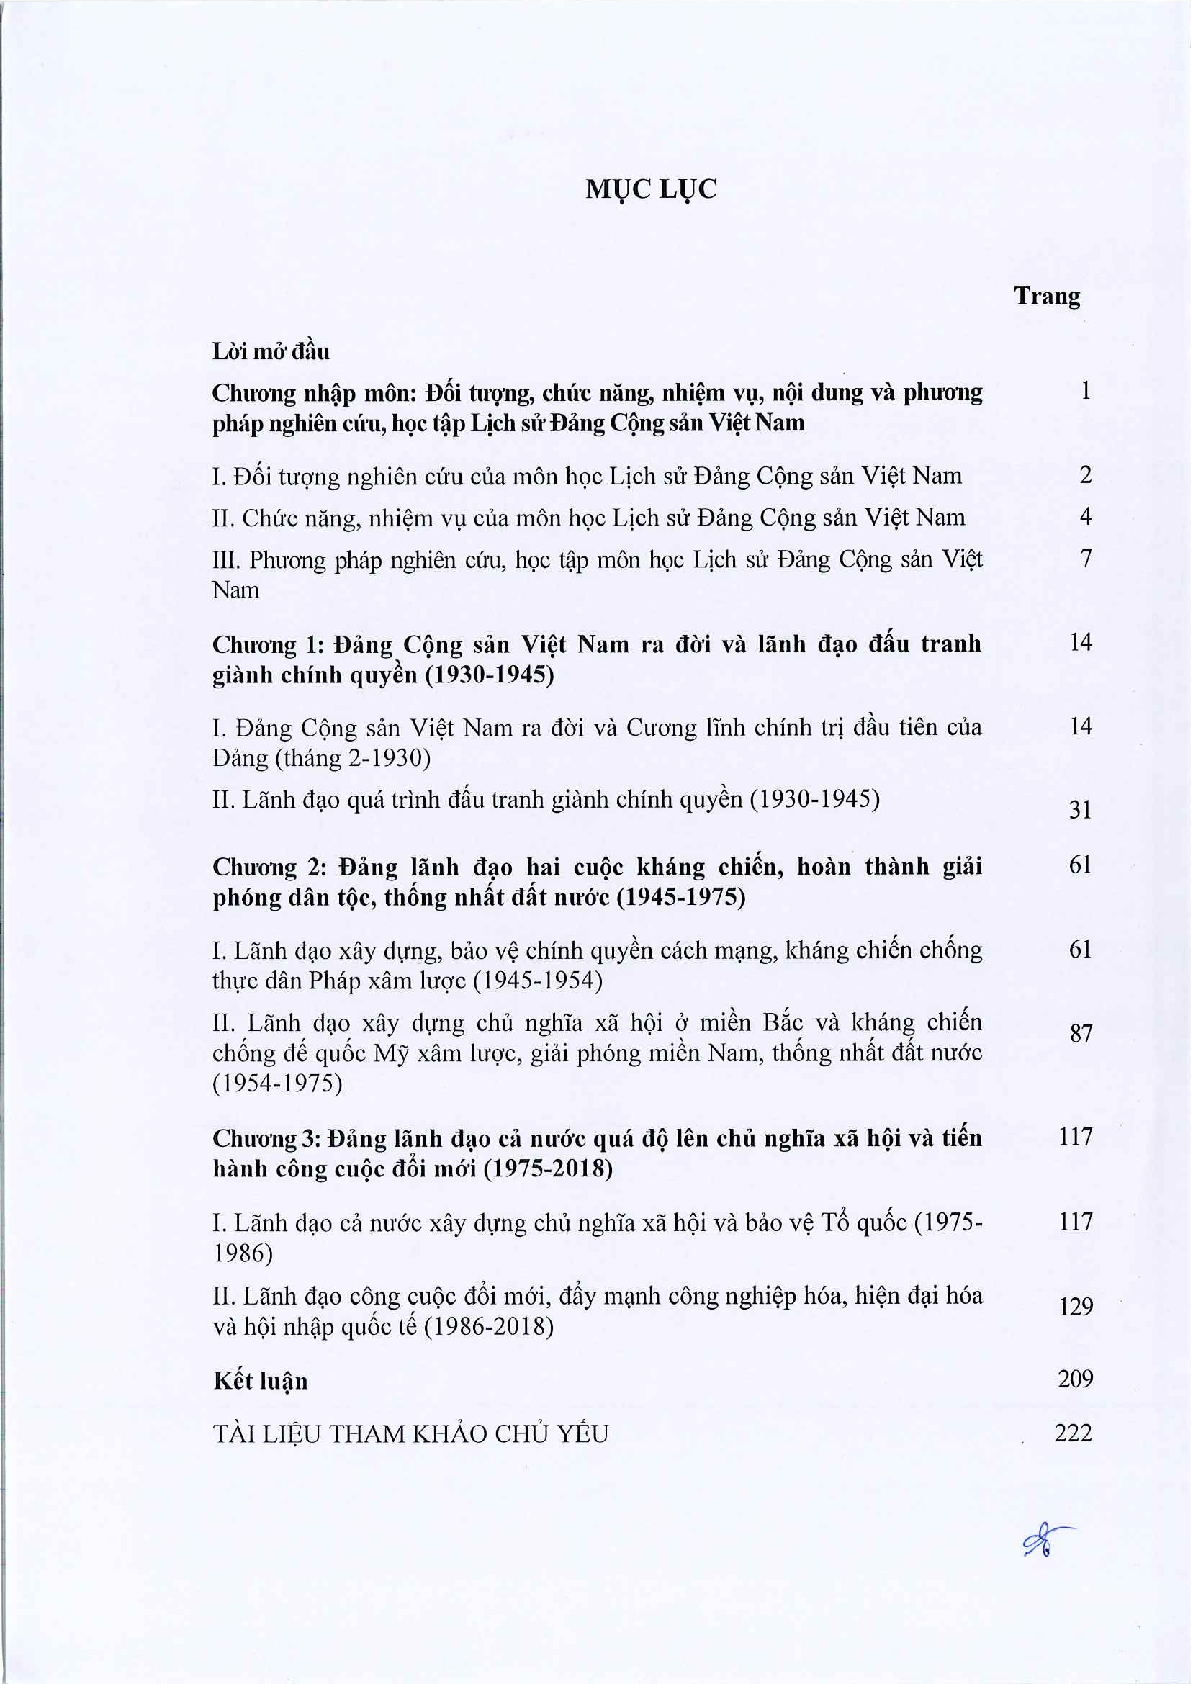 Giáo trình học phần Lịch sử Đảng | Đại học Sư Phạm Hà Nội (trang 7)